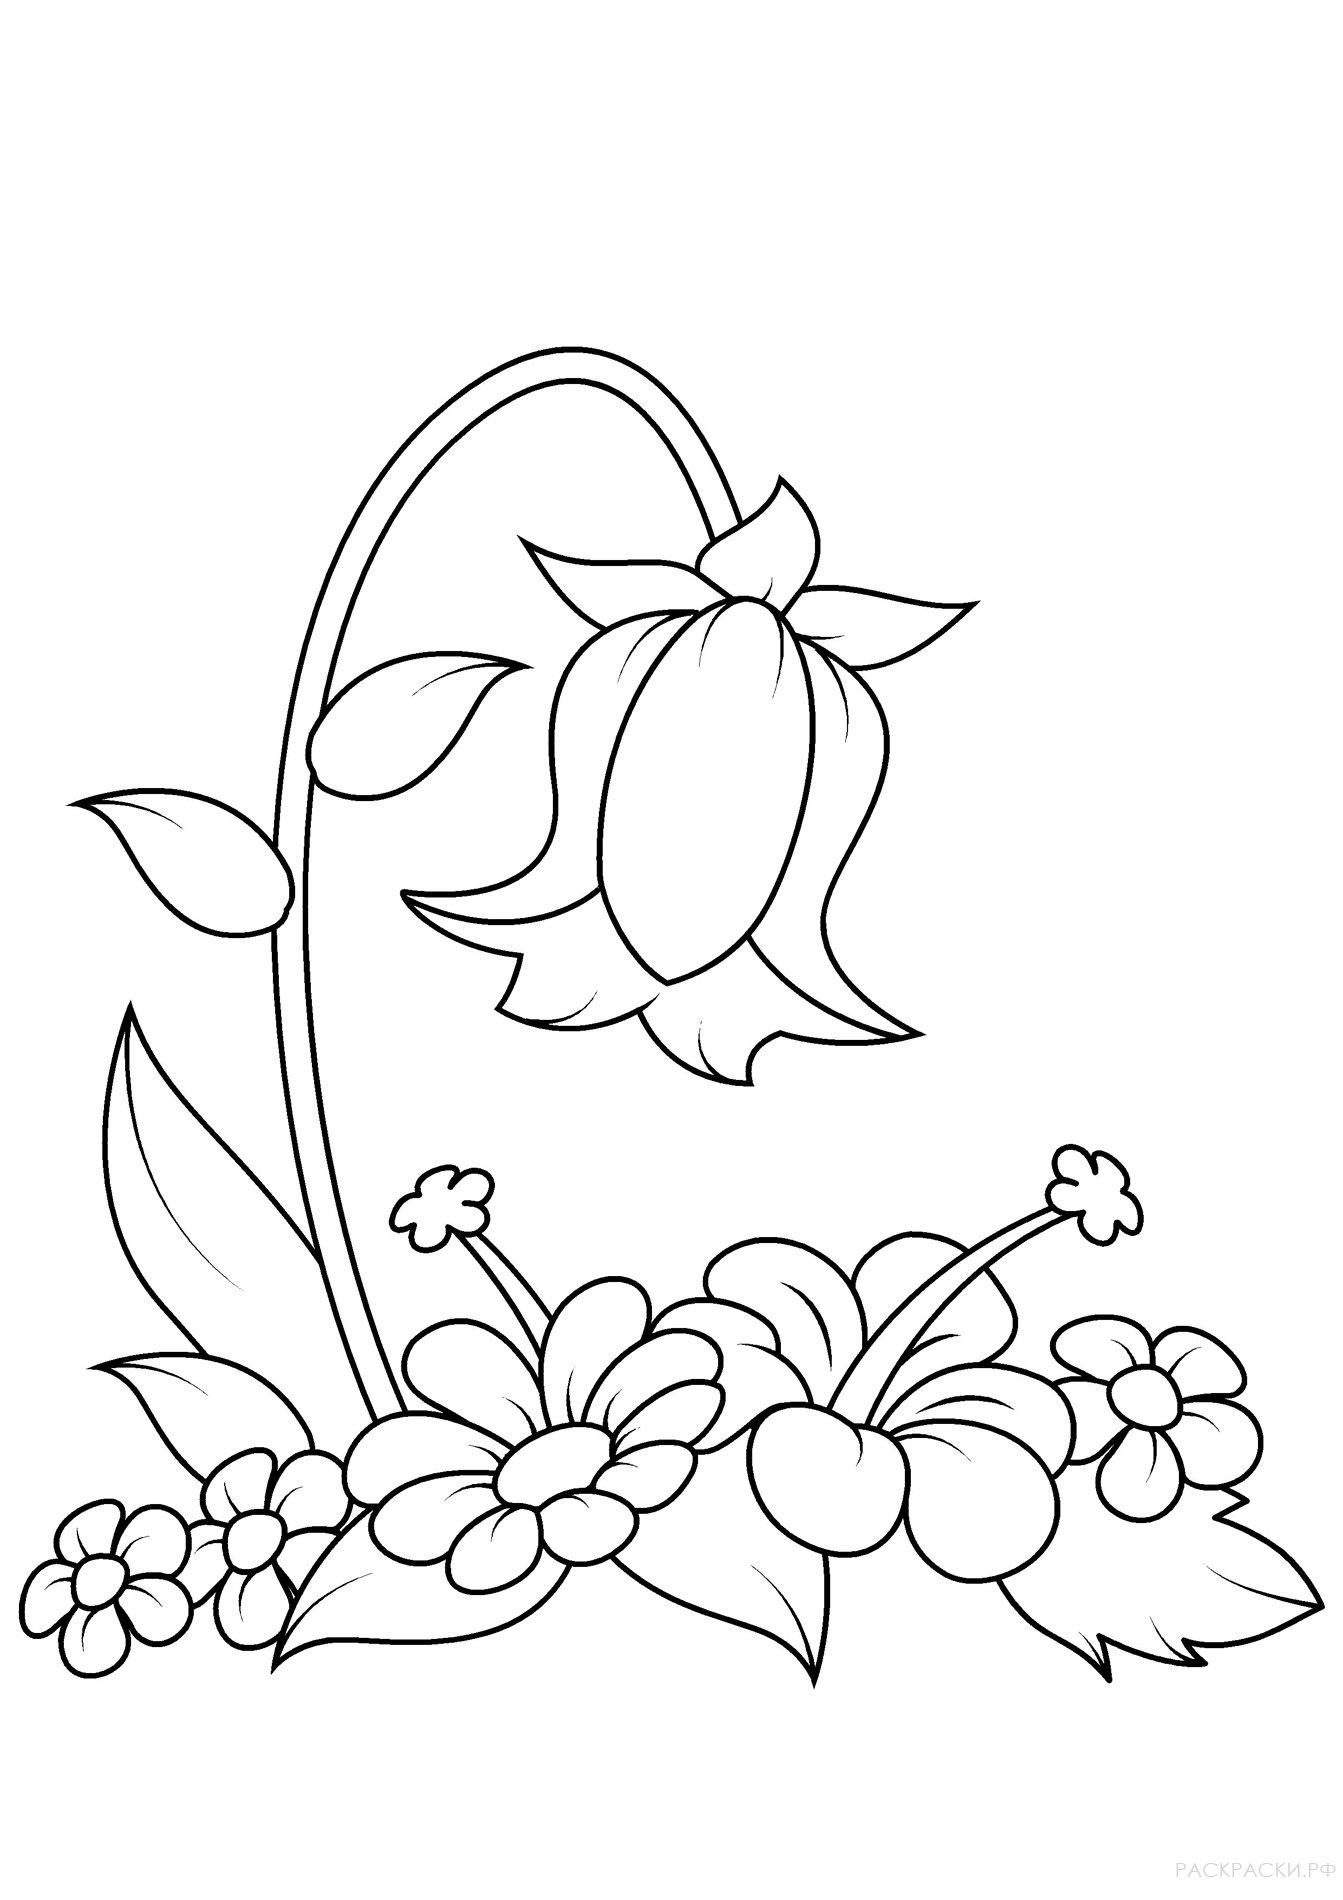 Раскраска Колокольчик и другие цветы